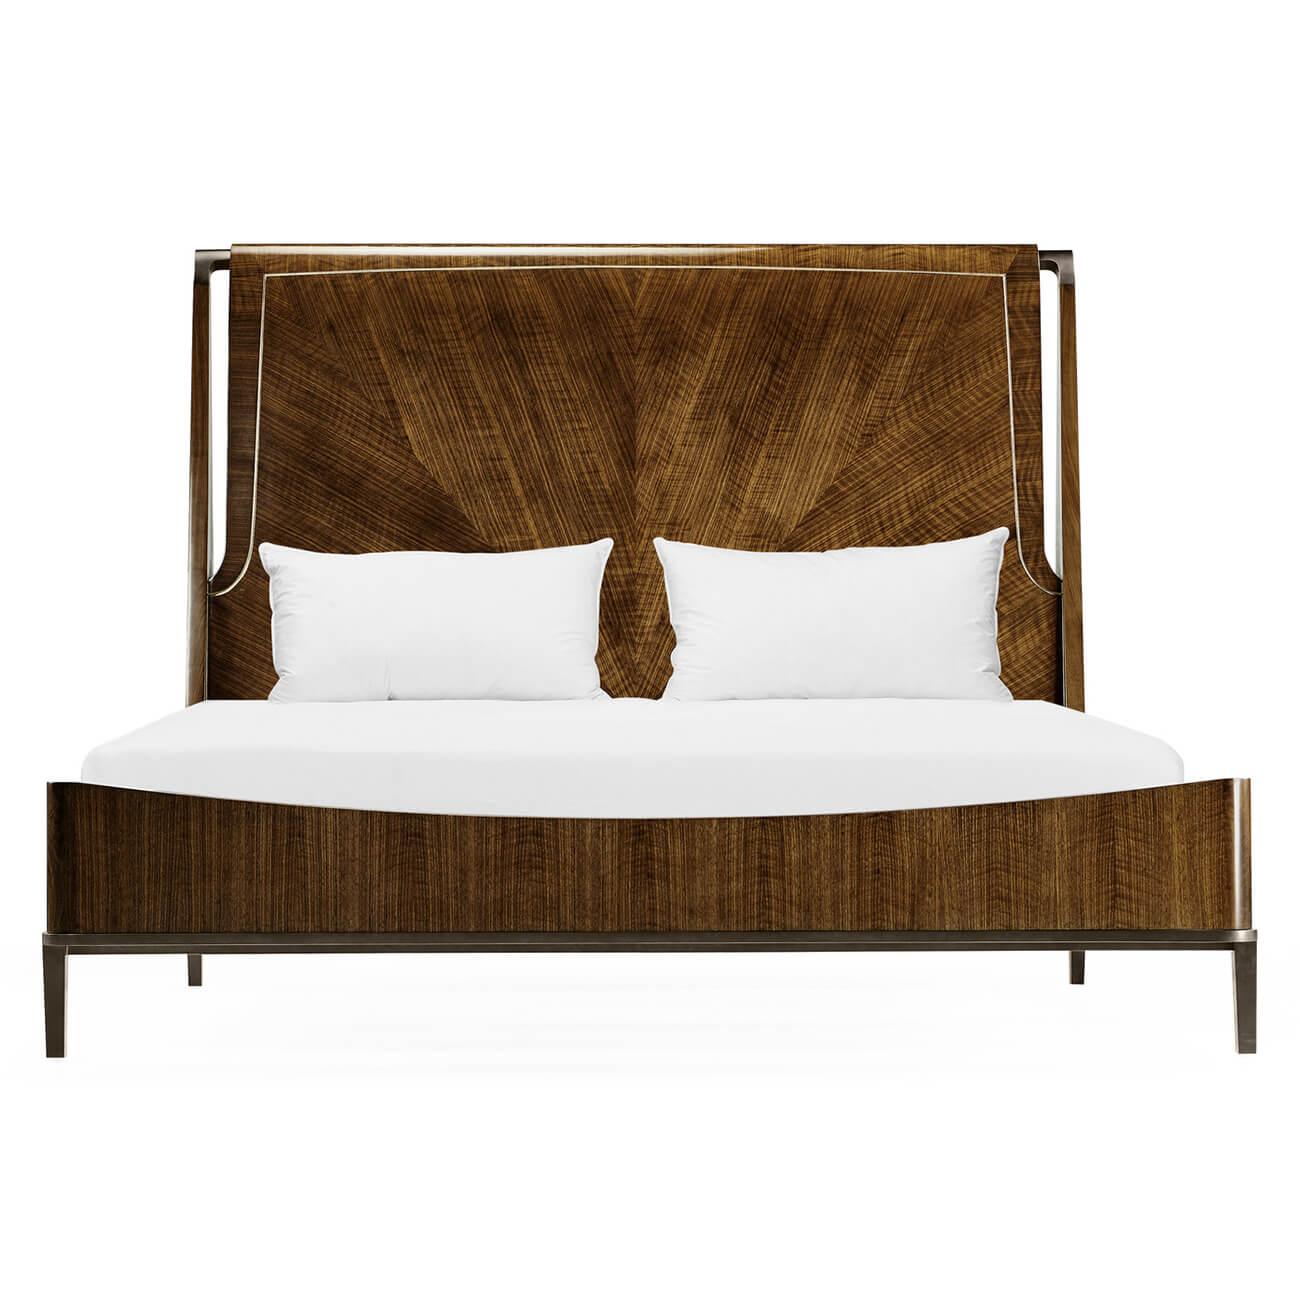 Un lit king-size en noyer coupé en quatre de style midcentury avec une tête de lit rembourrée et des ferrures et pieds en laiton antique.

Dimensions : 82 1/4